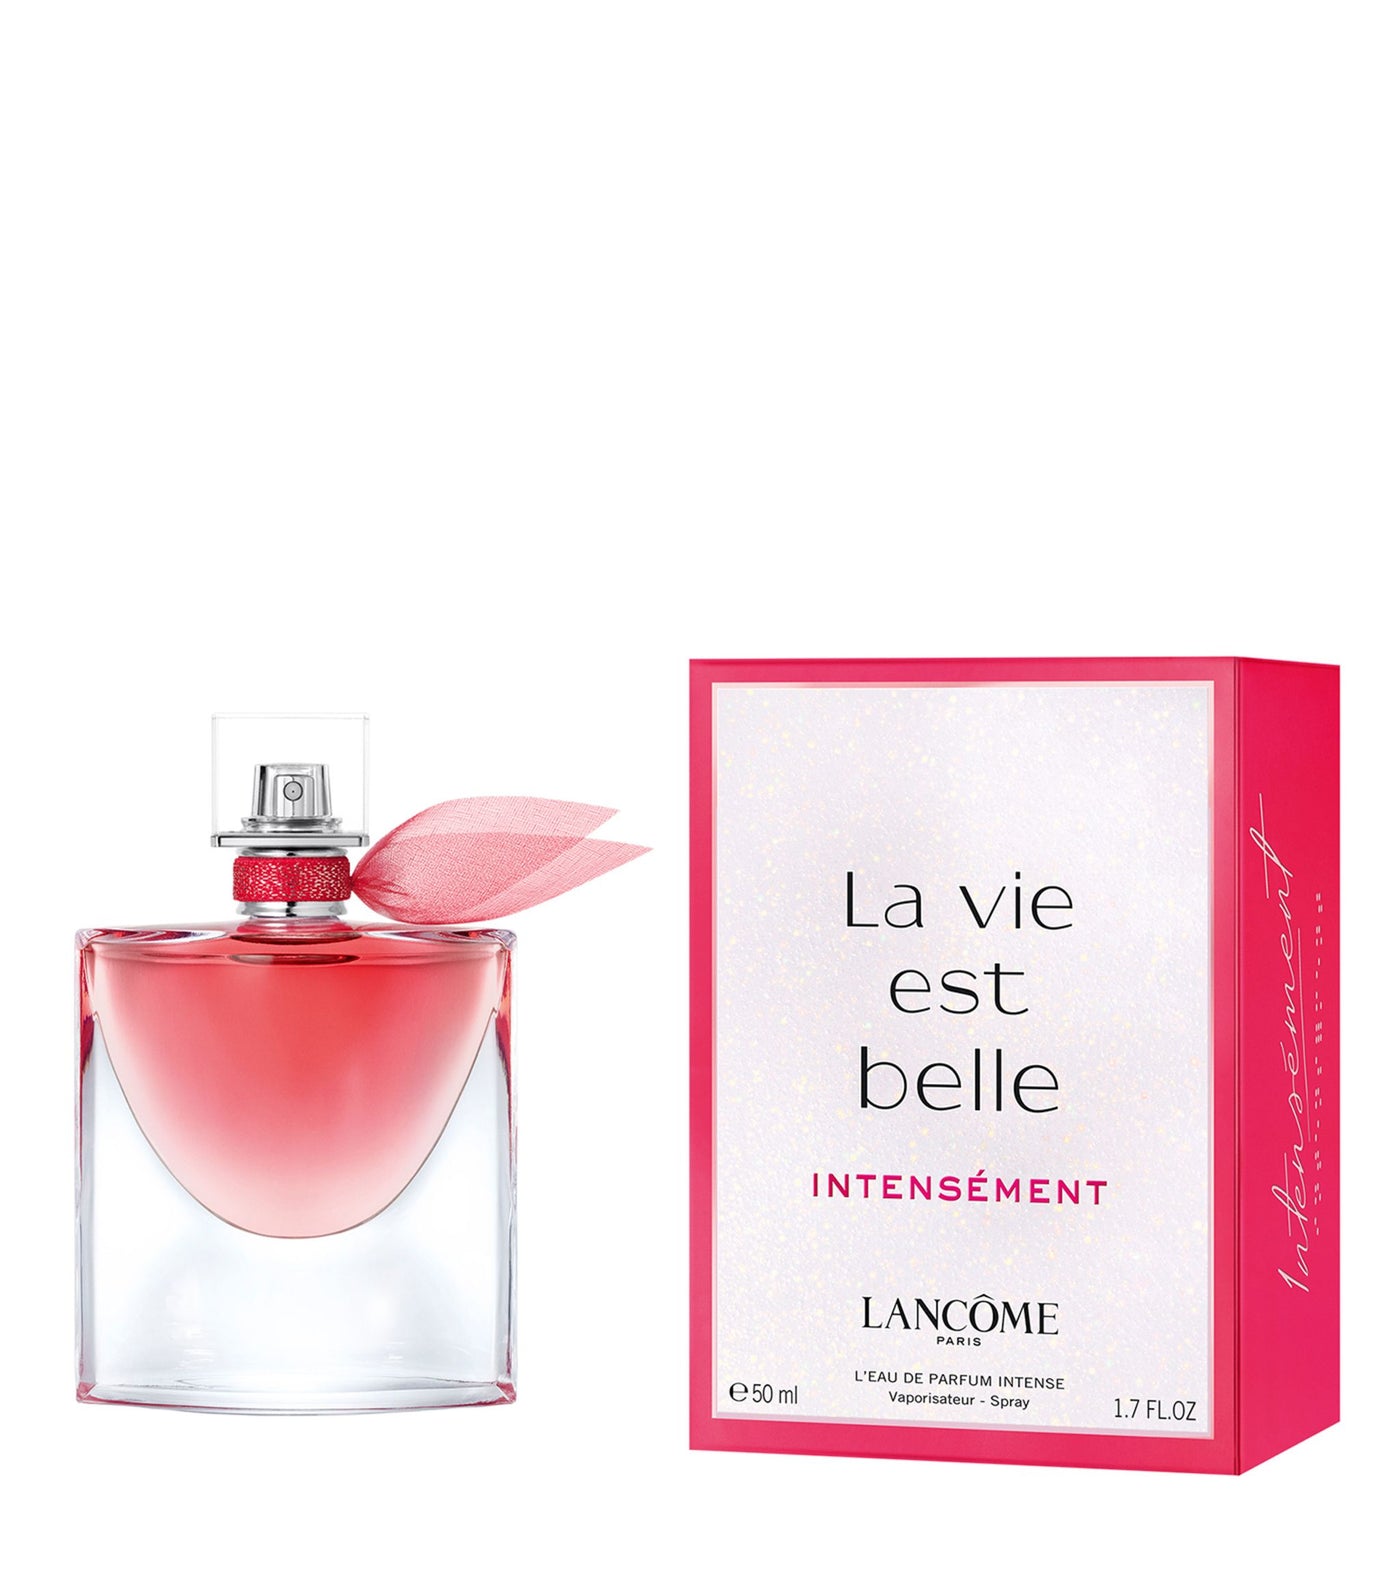 LANCOME La vie est belle INTENSÉMENT Eau de Parfum